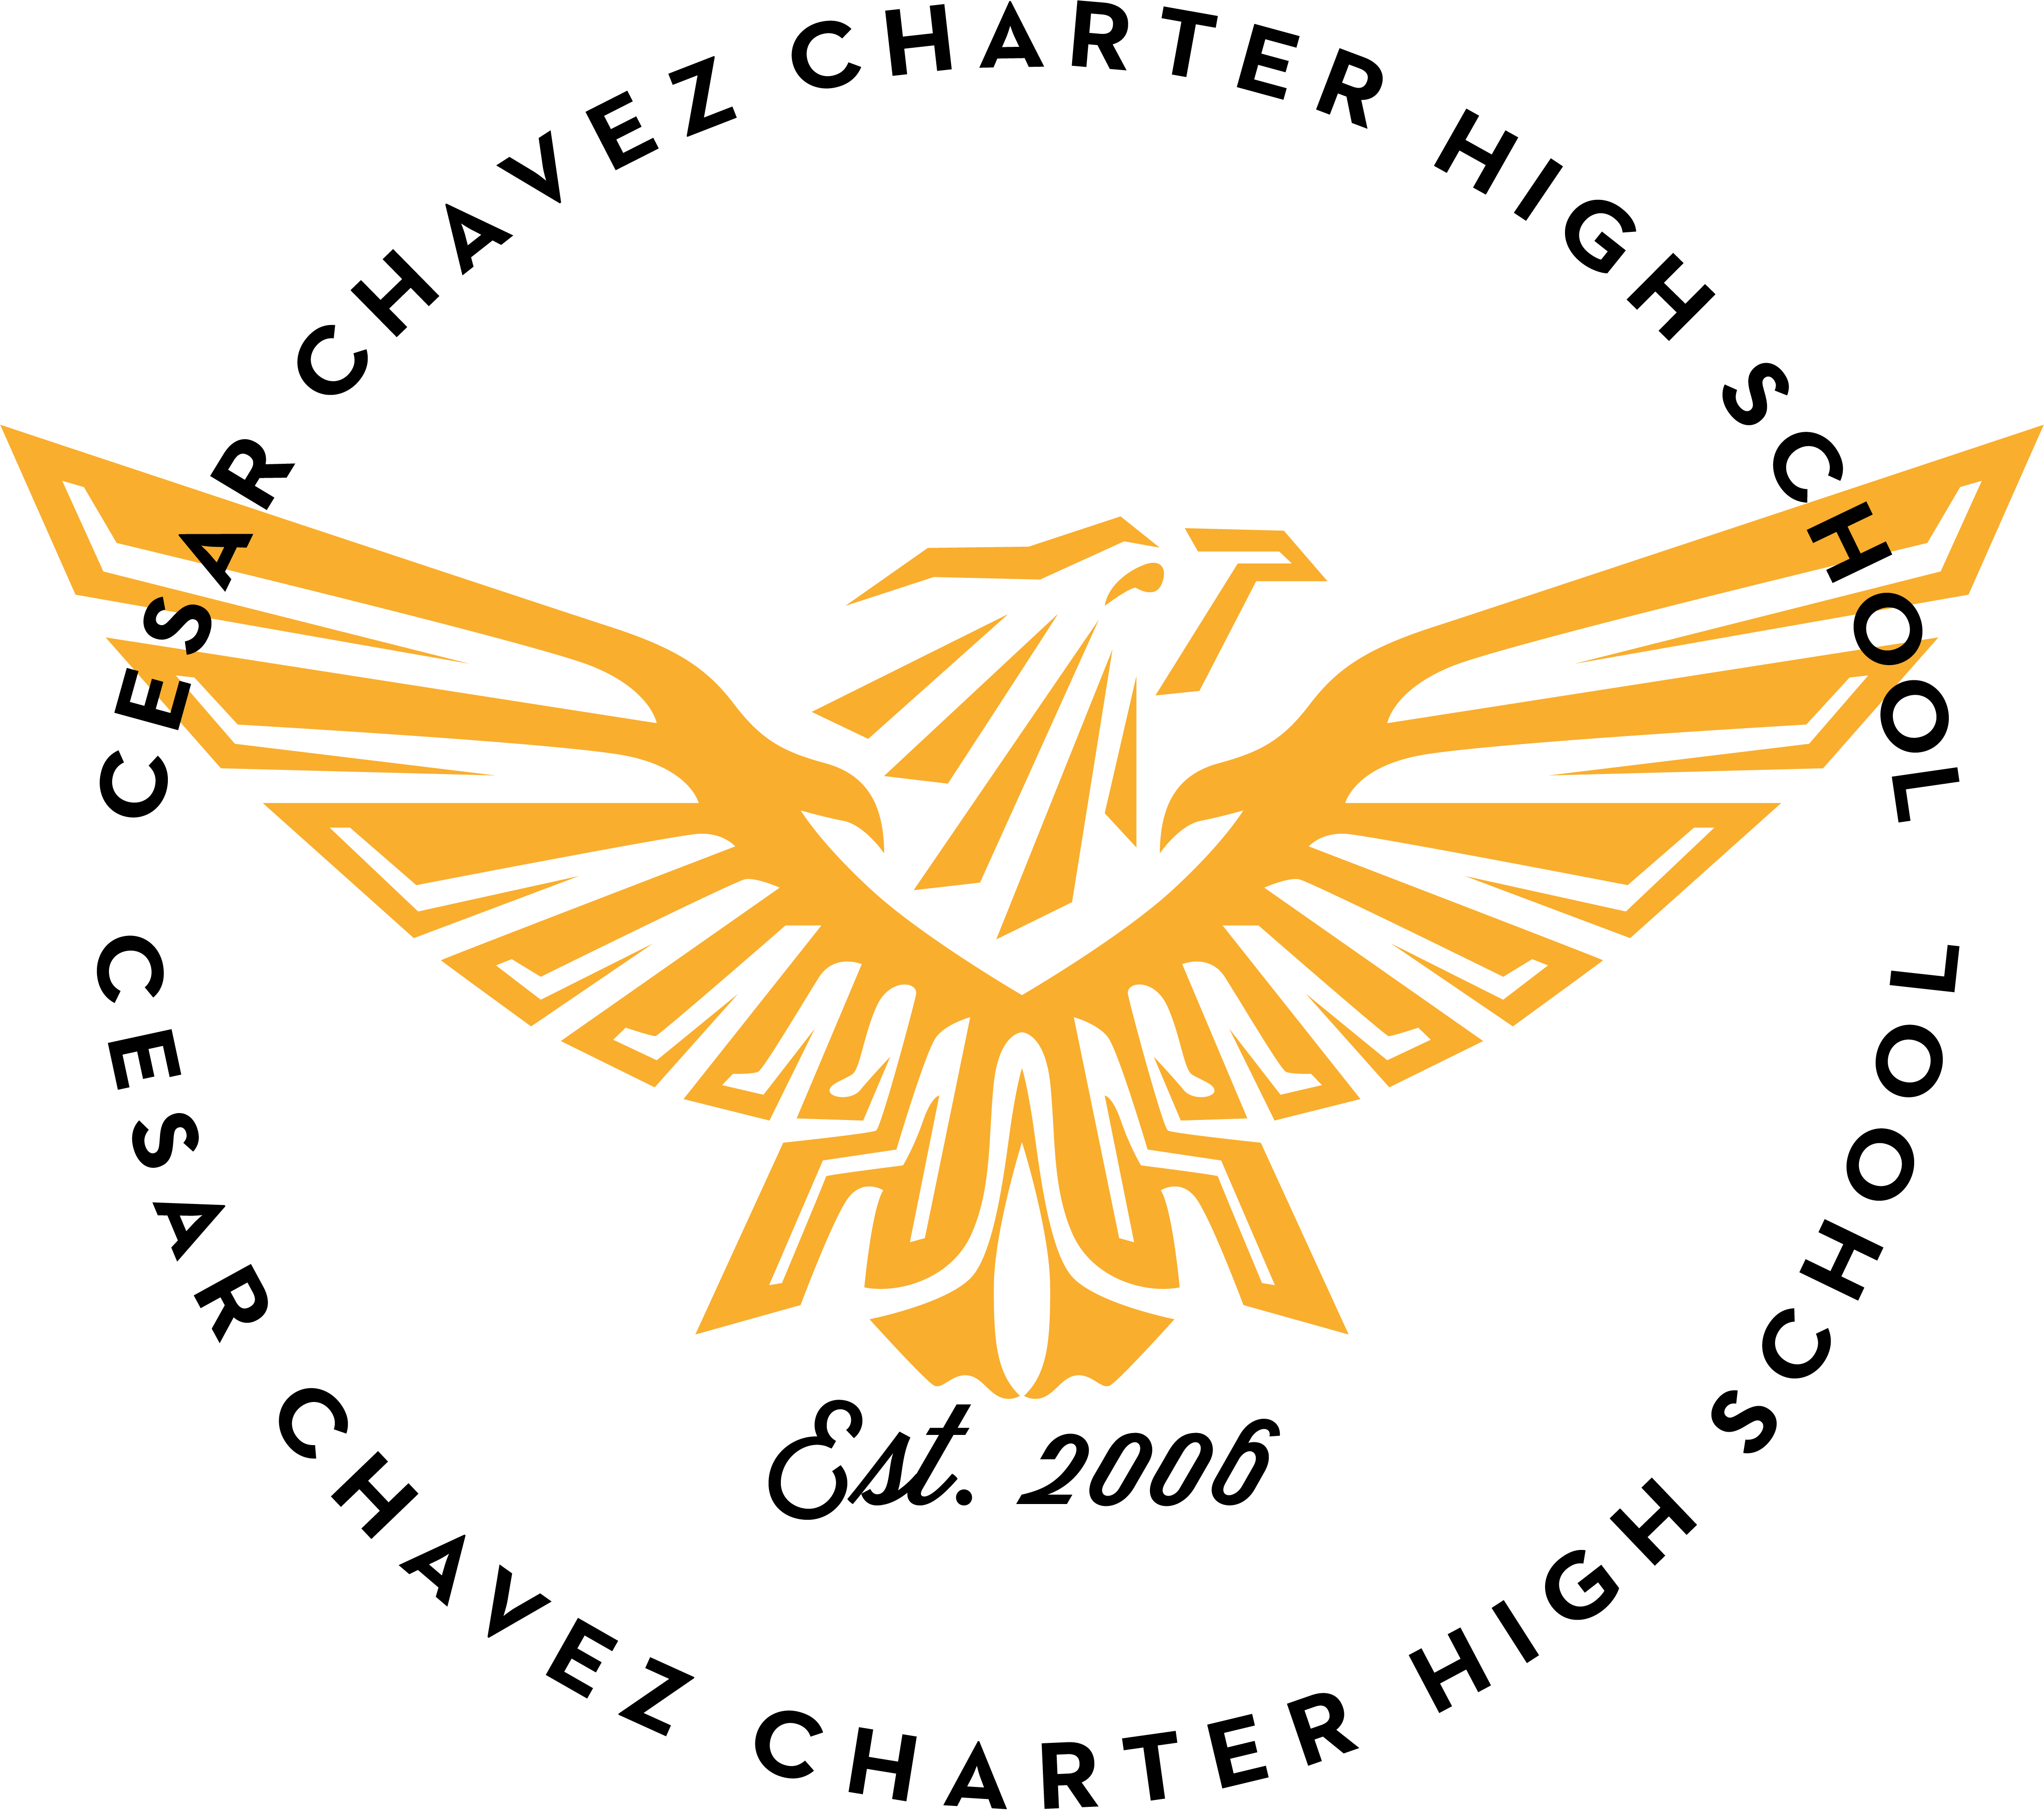 Deming Cesar Chavez Charter High School